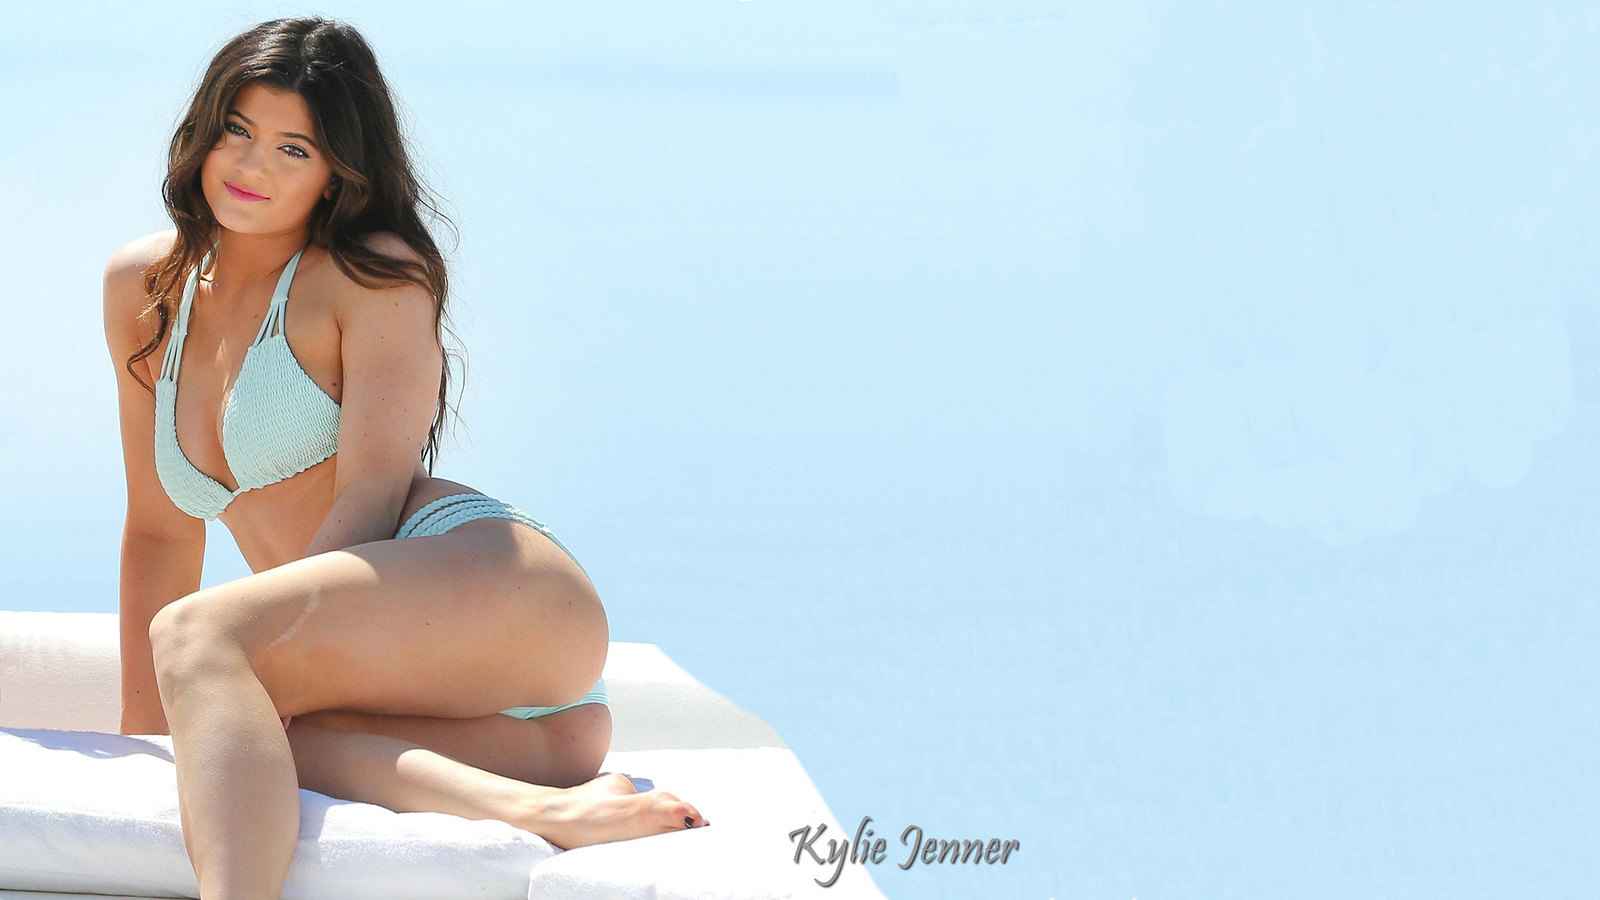 Kylie Jenner Nude Sky Blue Bikini Photo